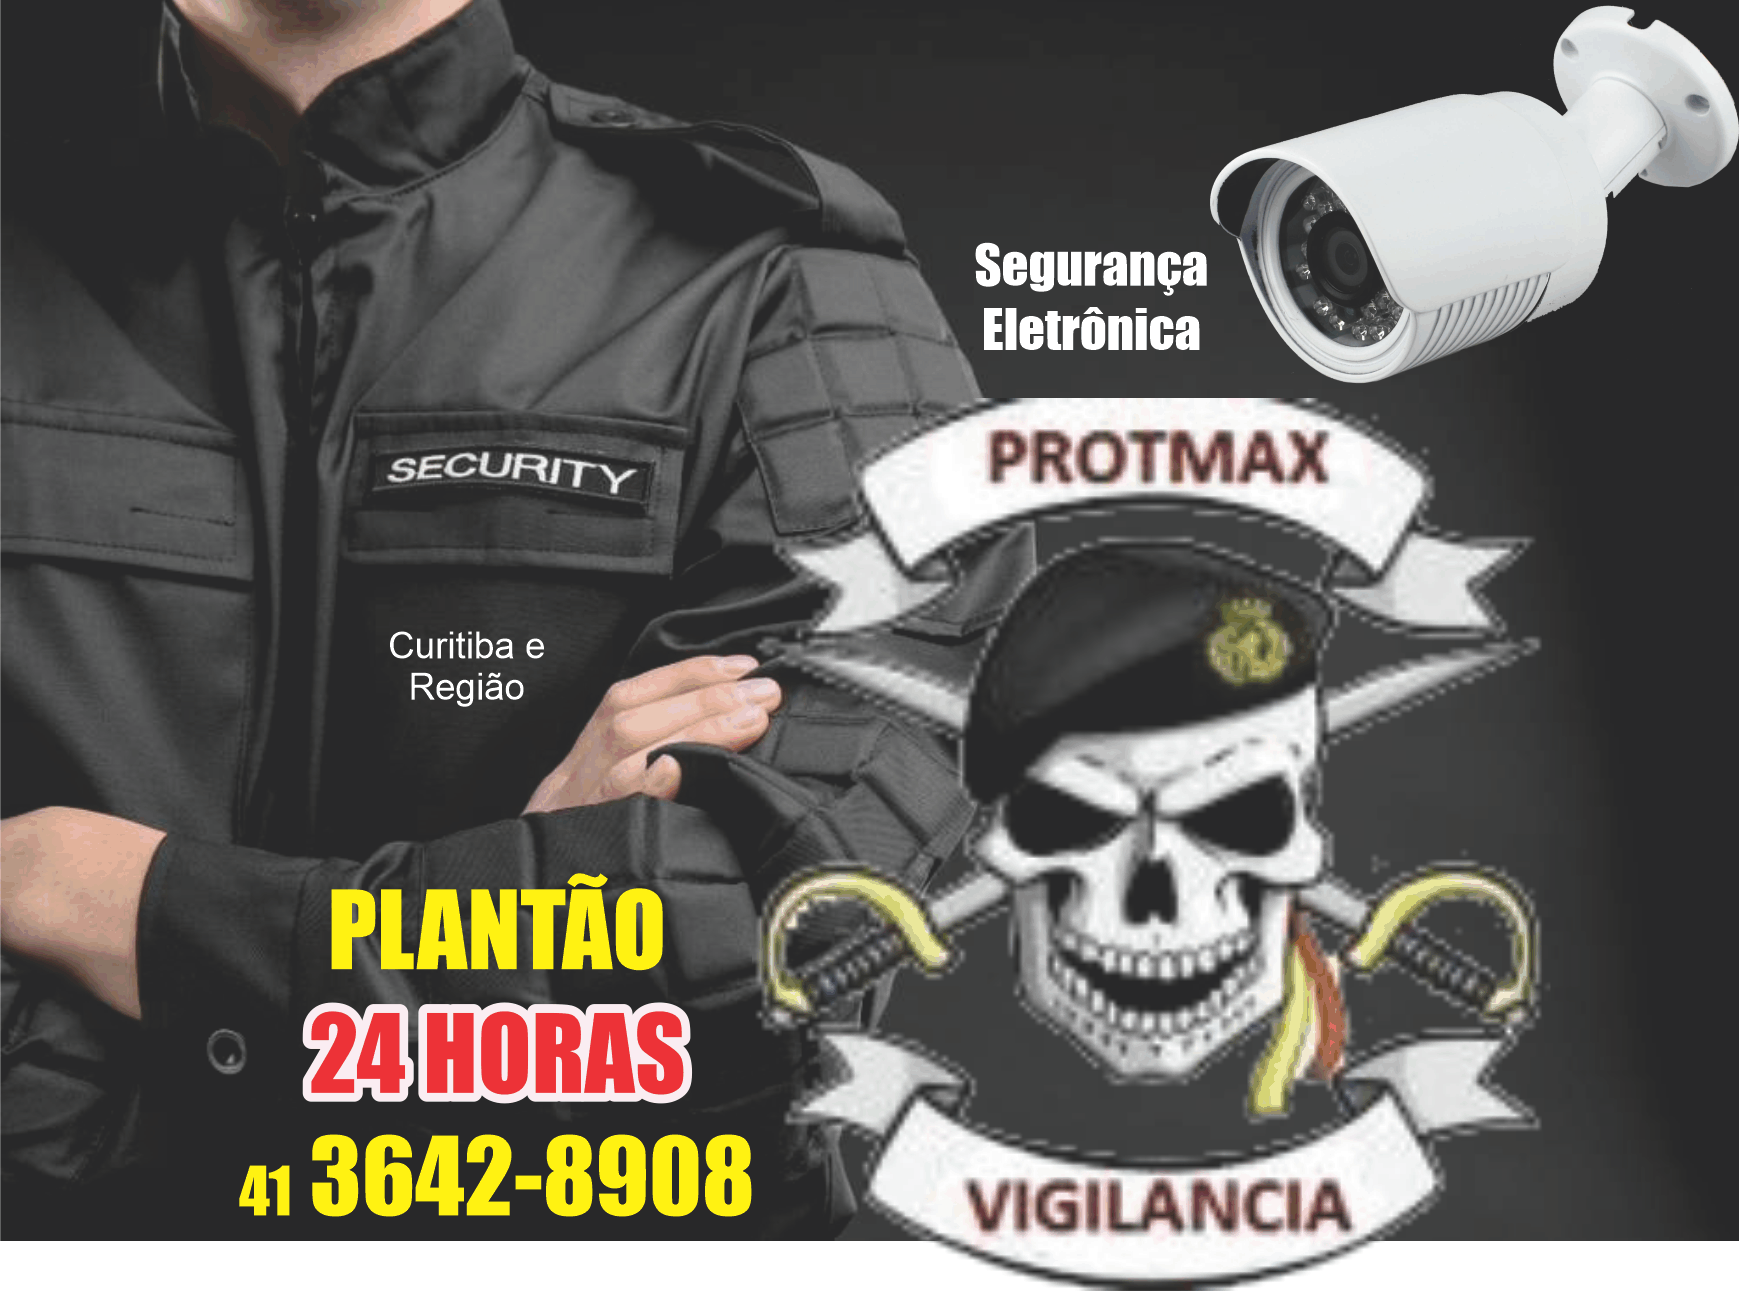  Protmax Vigilância      RUA Piquiri , 152, ARAUCÁRIA - PR  Fones: (41) 3607-5103 / (41) 98875-6407